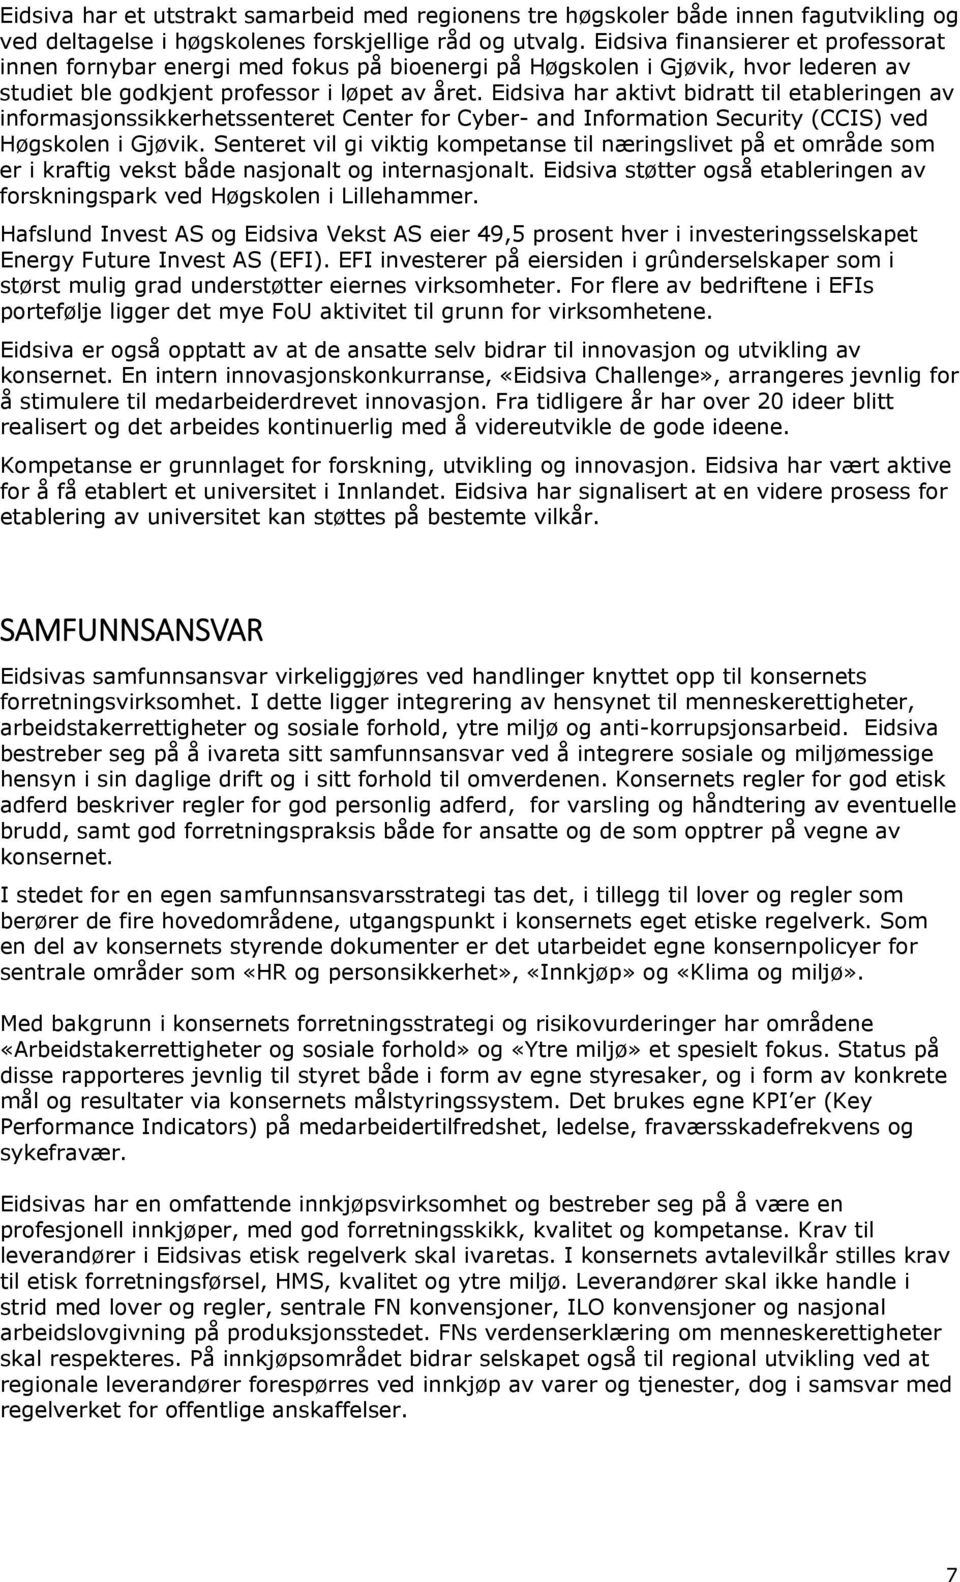 Eidsiva har aktivt bidratt til etableringen av informasjonssikkerhetssenteret Center for Cyber- and Information Security (CCIS) ved Høgskolen i Gjøvik.